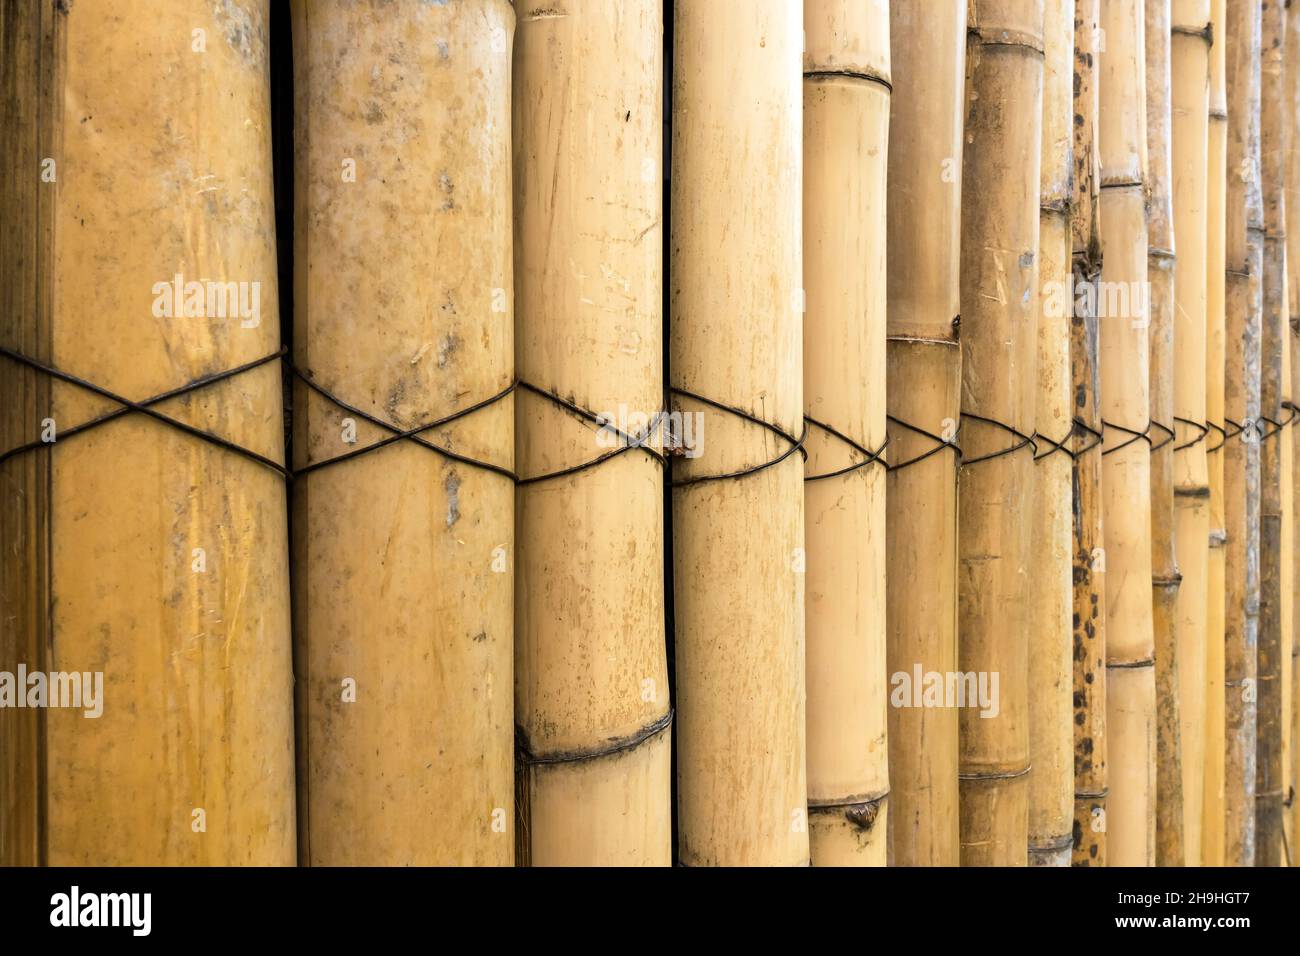 Alte braune Ton Bambus einfache Wand oder Bamboo Zaun Textur Hintergrund  für Innen-oder Außenbereich Design Vintage Ton. Hintergrund mit braunen  Bambusstäben Stockfotografie - Alamy